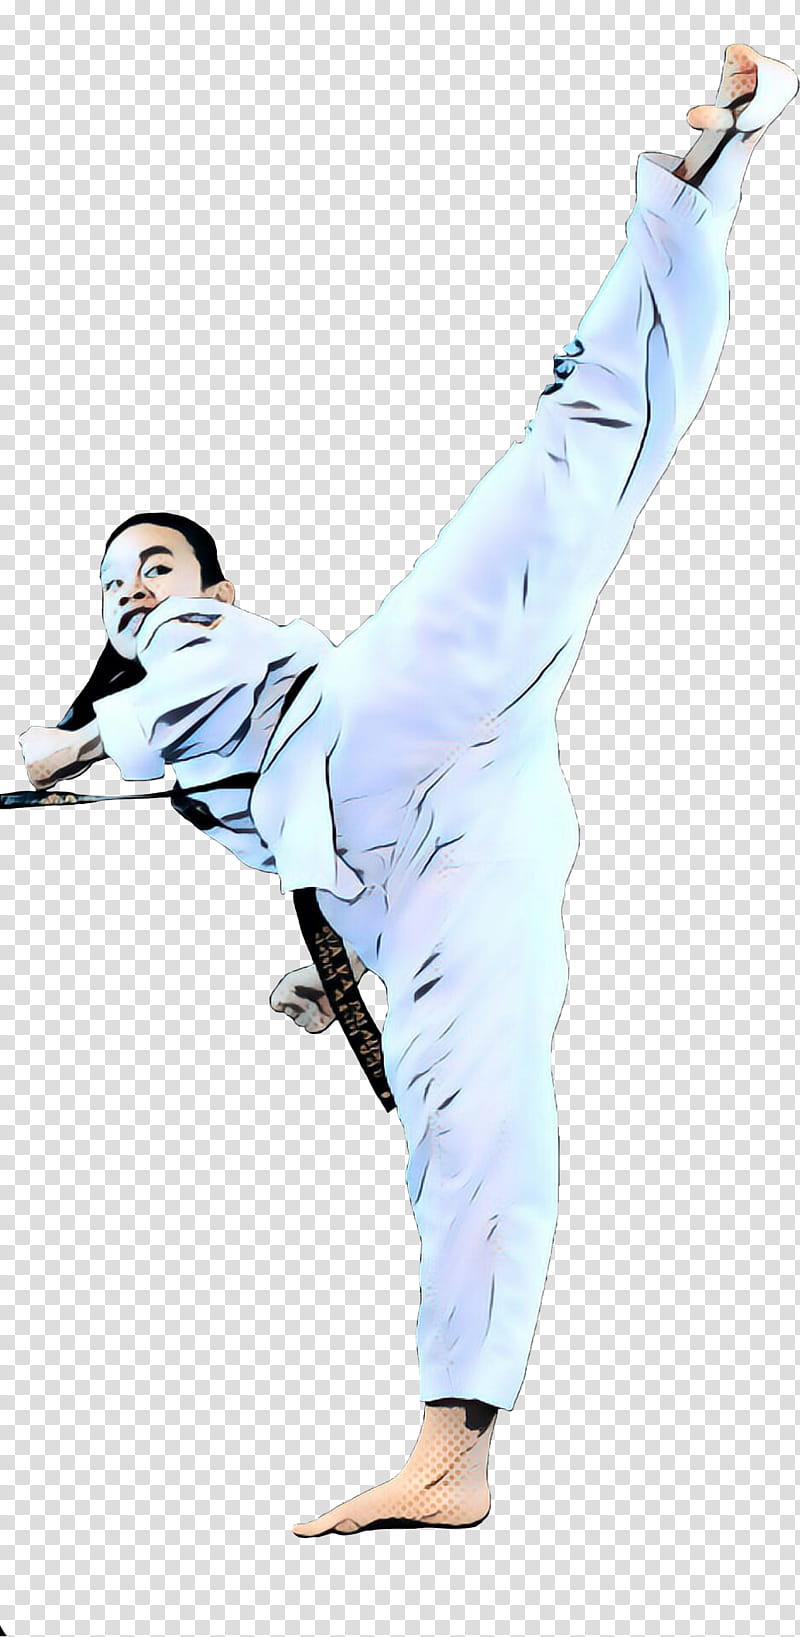 Taekwondo, Costume, Martial Arts Uniform, Kick, Kung Fu, Baguazhang, Wushu, Xing Yi Quan transparent background PNG clipart